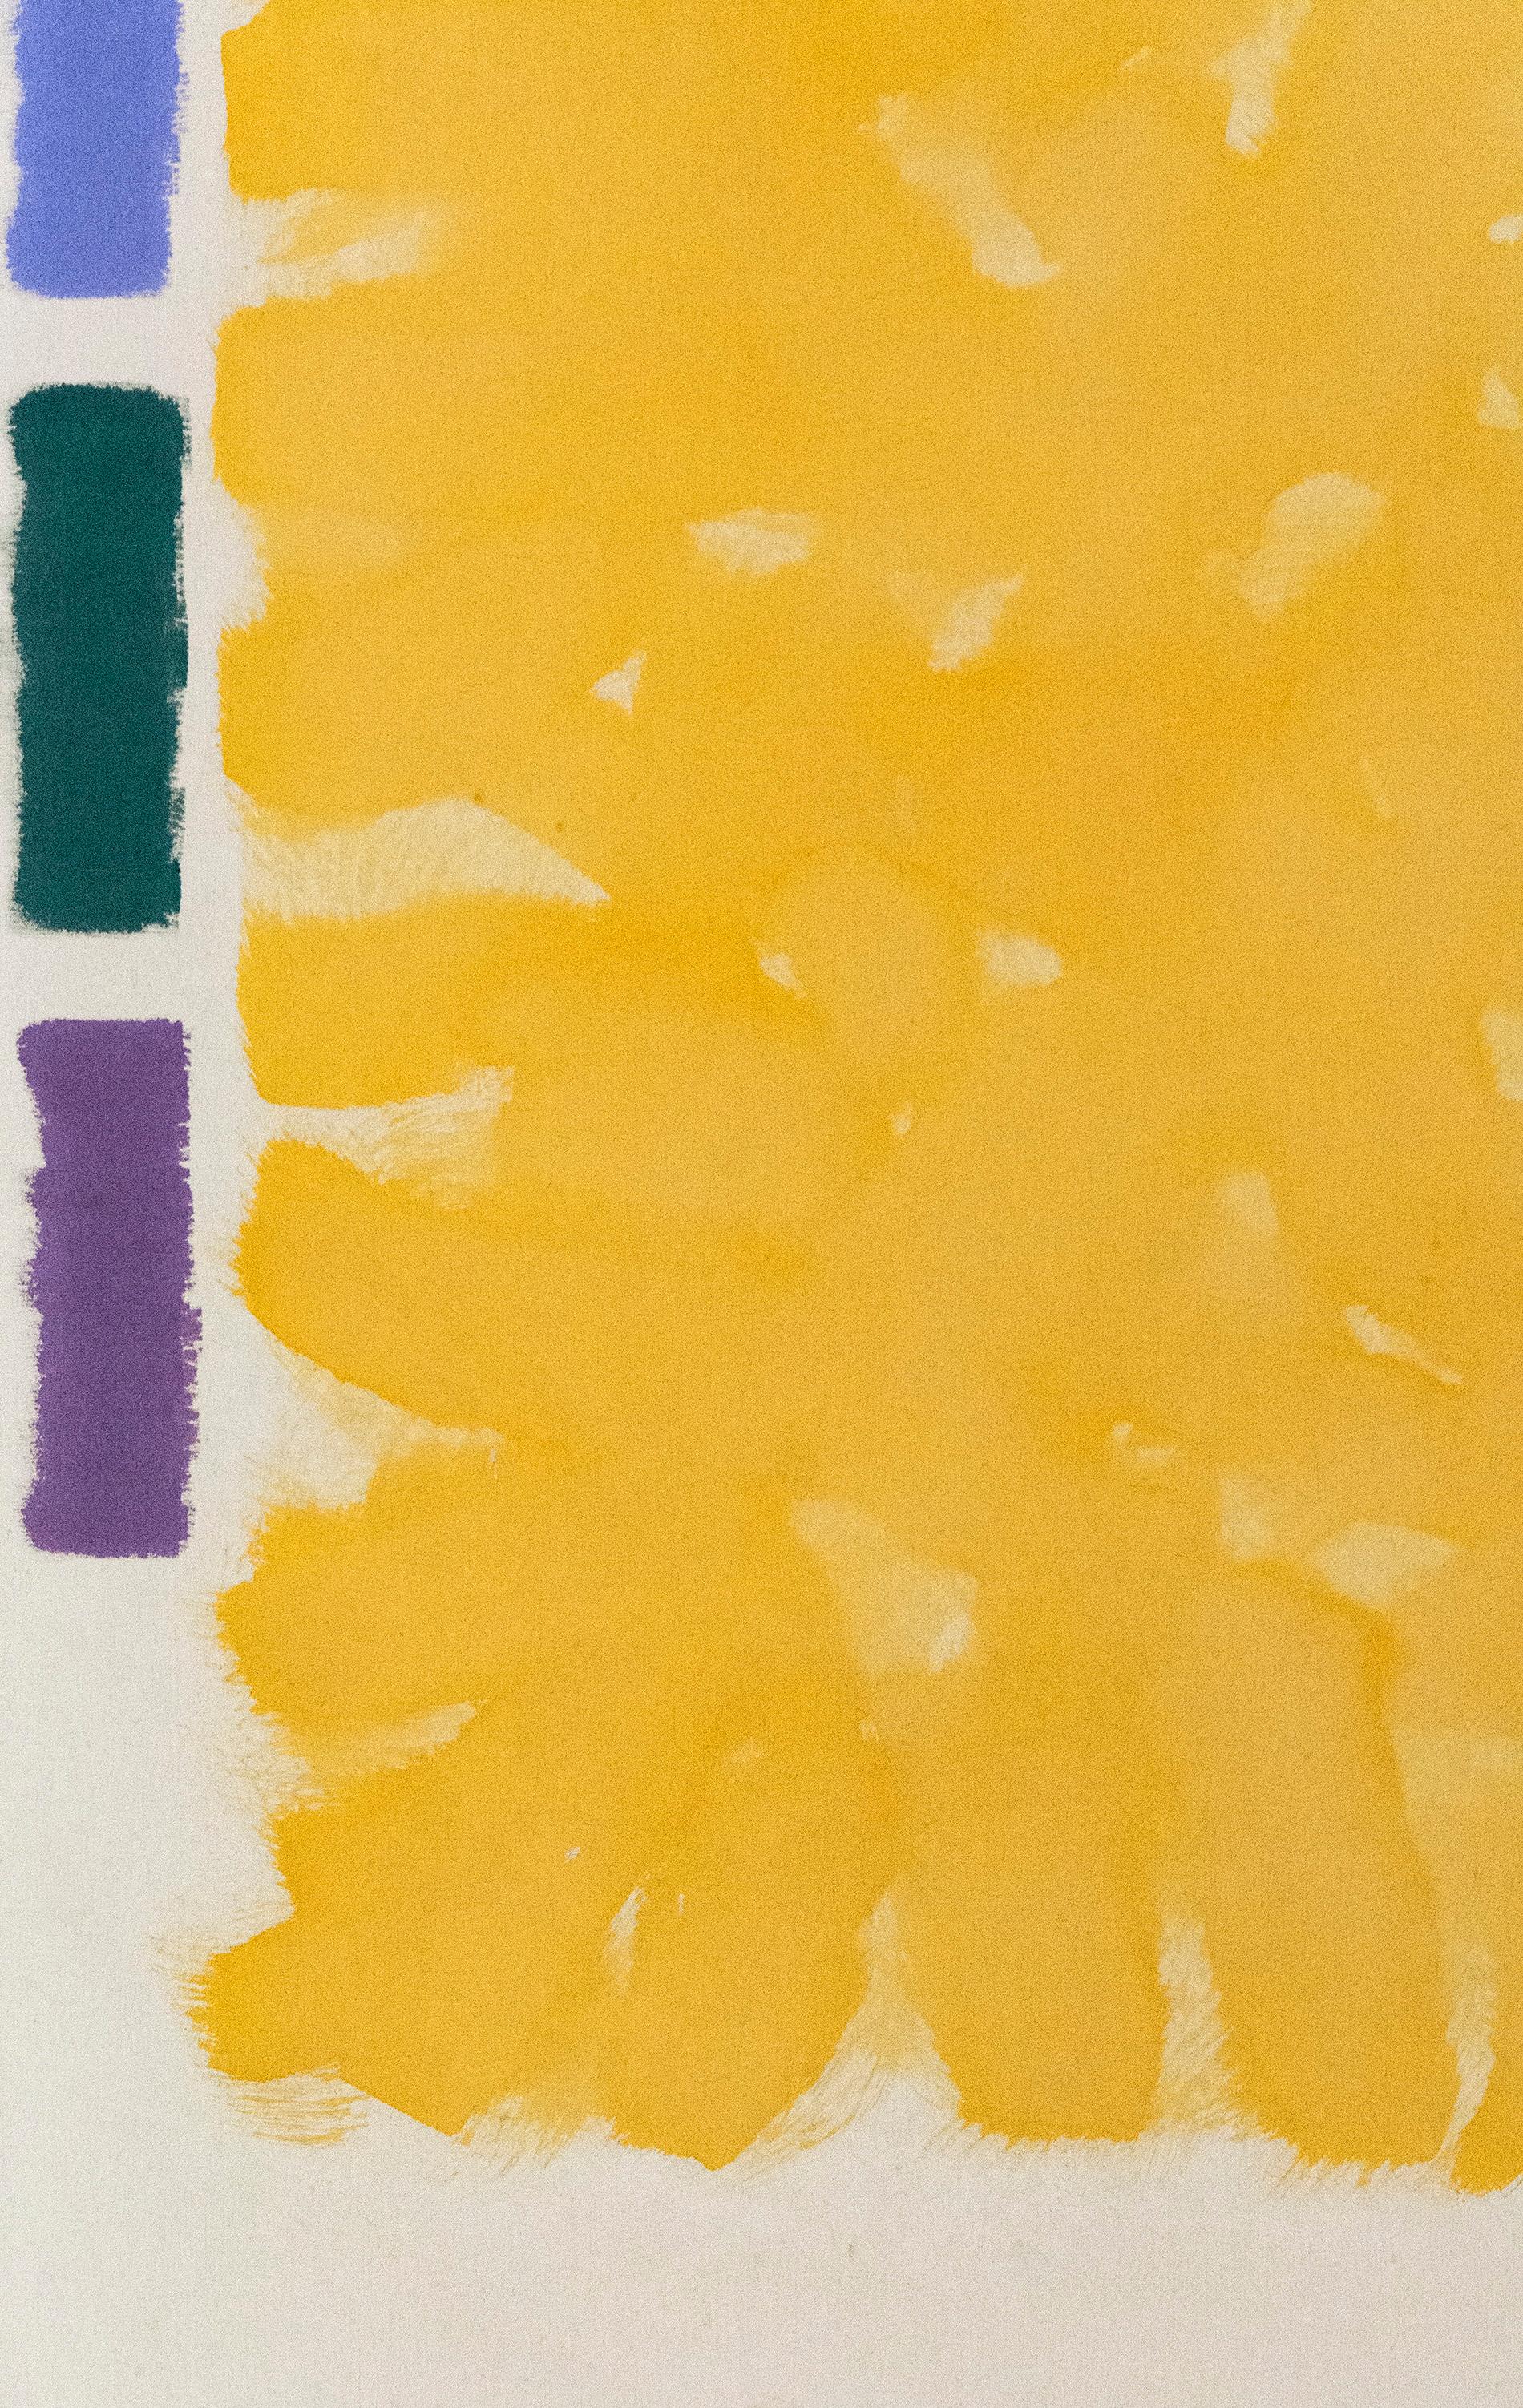 Vitrail d'été - grand, brillant, coloré, jaune, abstrait, acrylique sur toile - Painting de Milly Ristvedt